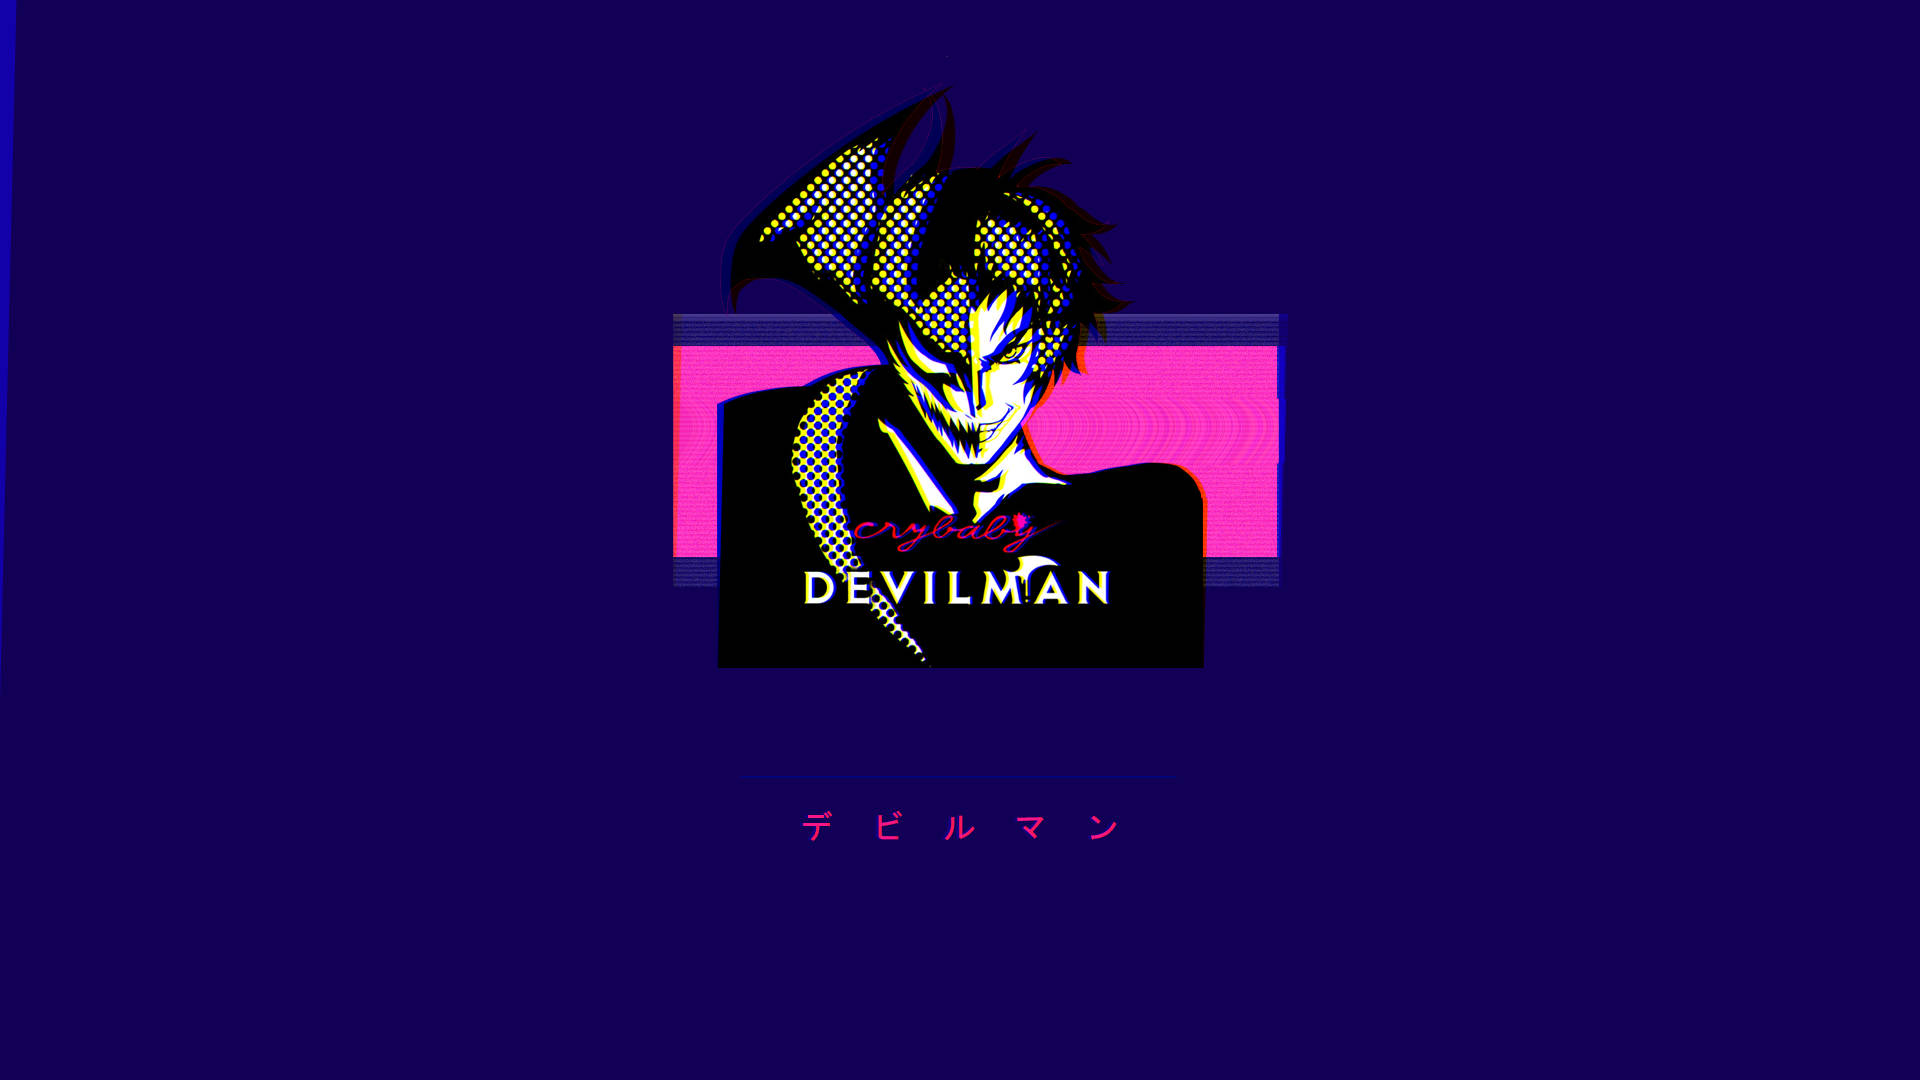 Devilman Crybaby Background Photos